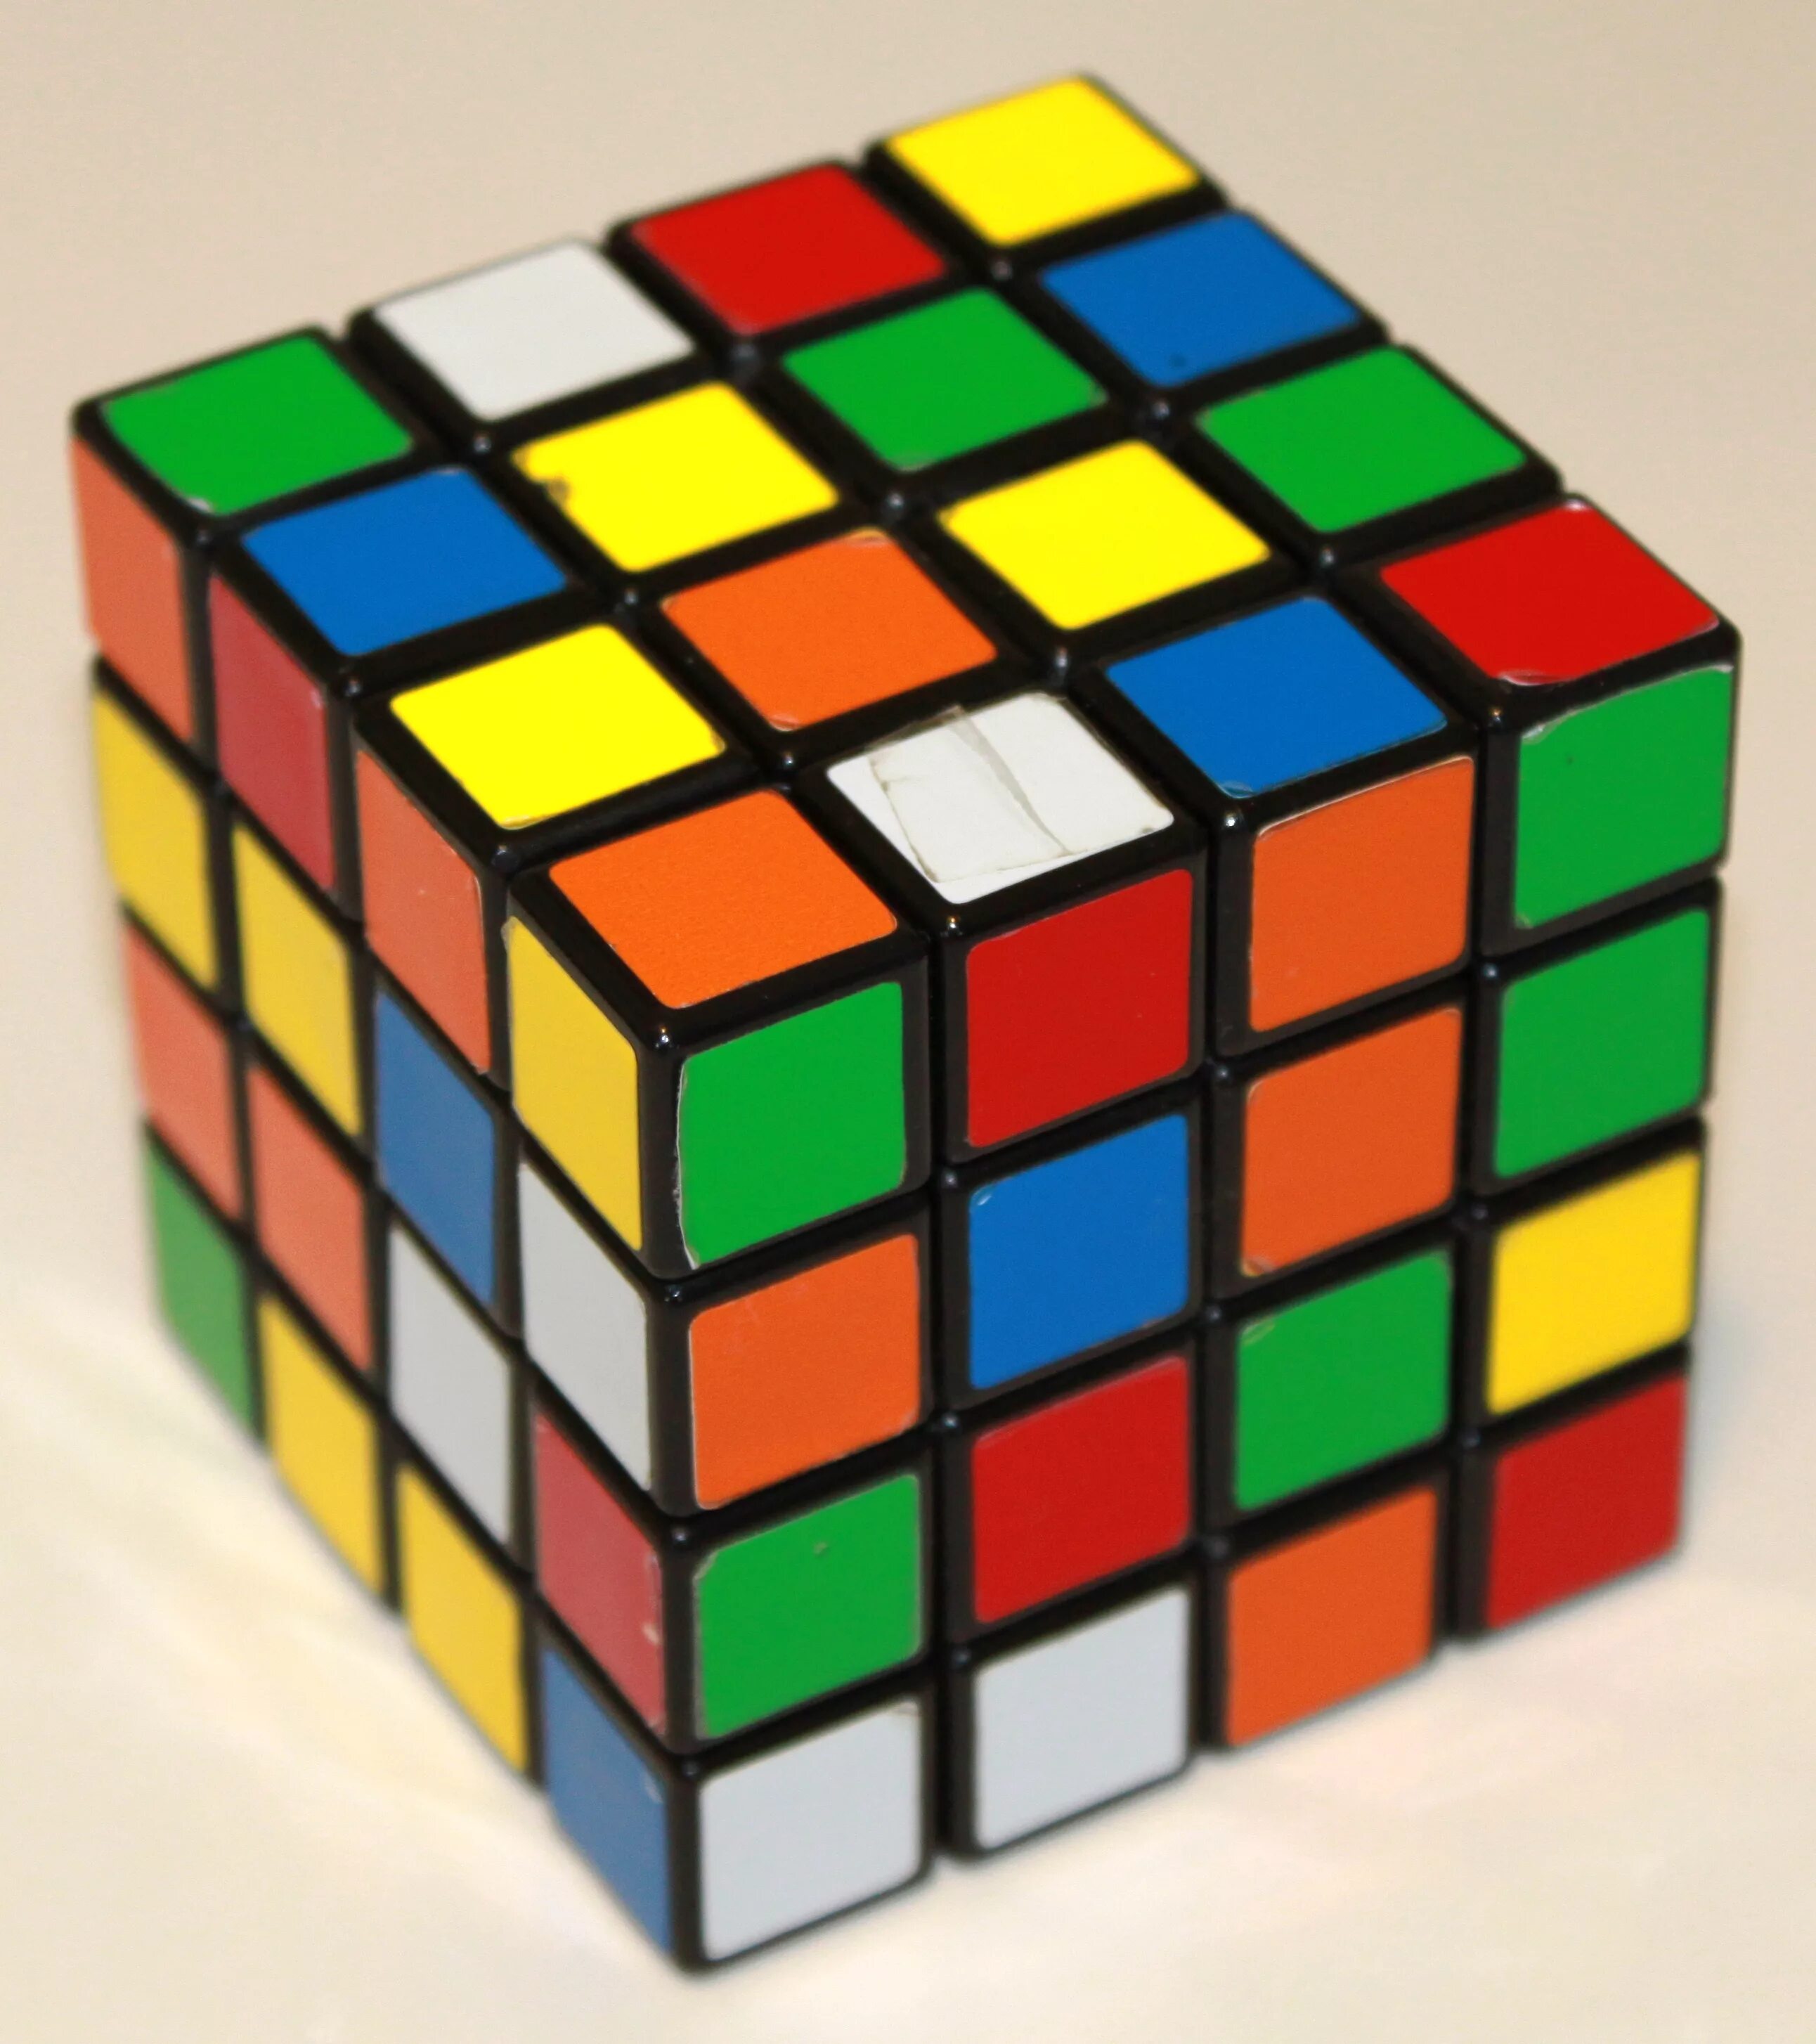 Цвета рубика. Кубик-Рубика 3х3 стандарт. Кубик-Рубика 3х3 со всех сторон. Цвета кубика Рубика 3х3. Расположение цветов на кубике Рубика 3х3.